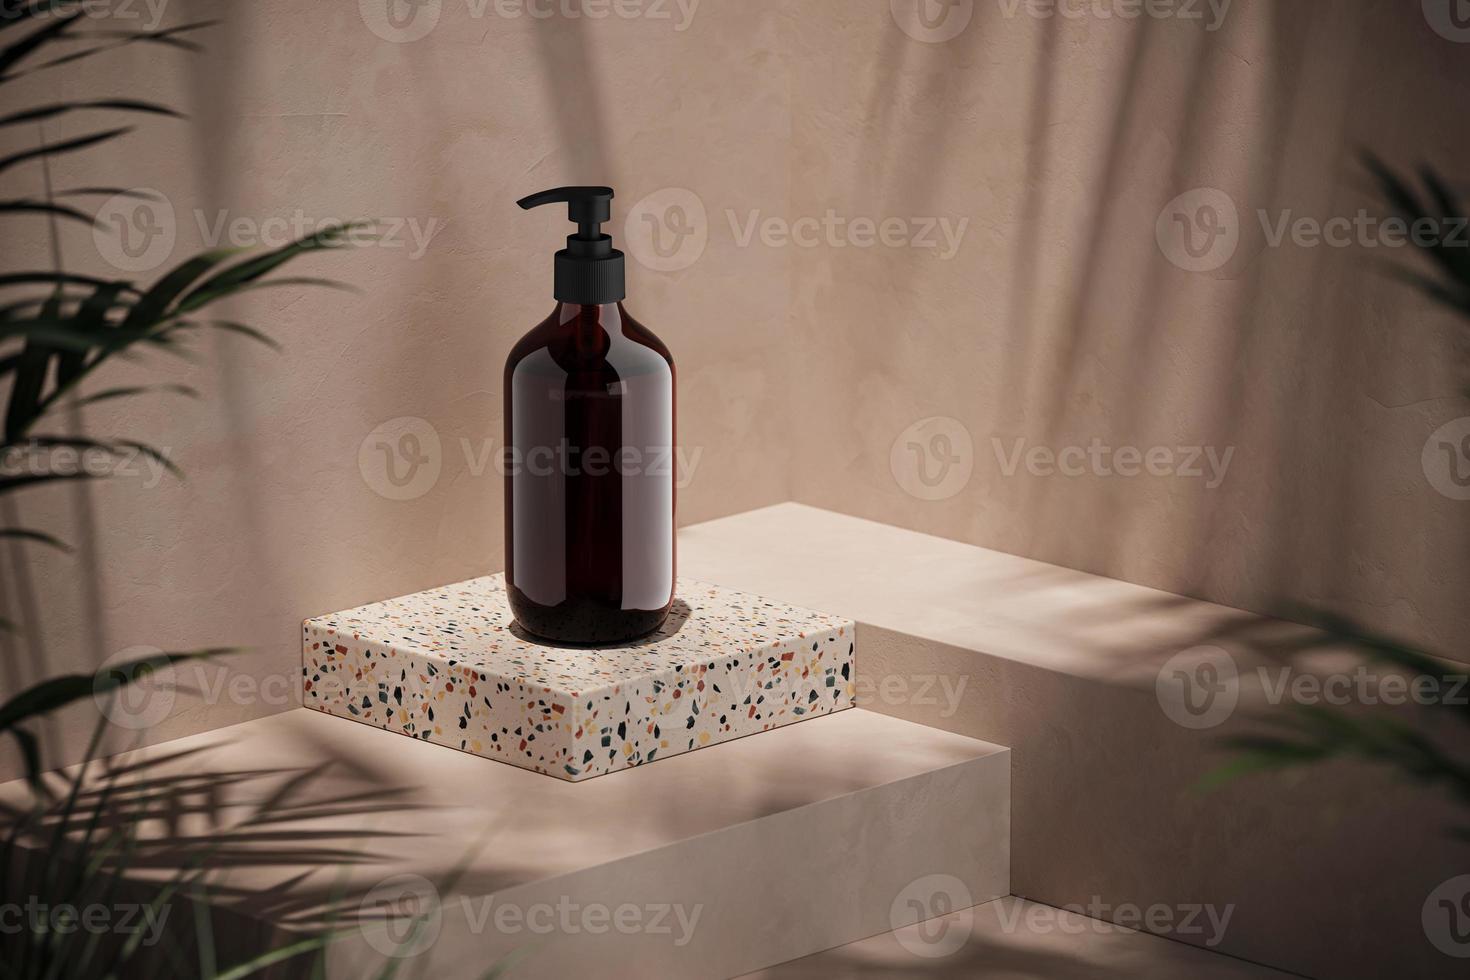 bottiglia della pompa mockup sulla scena beige, sfocatura delle piante in primo piano. sfondo per presentazioni o annunci cosmetici. rendering 3D foto